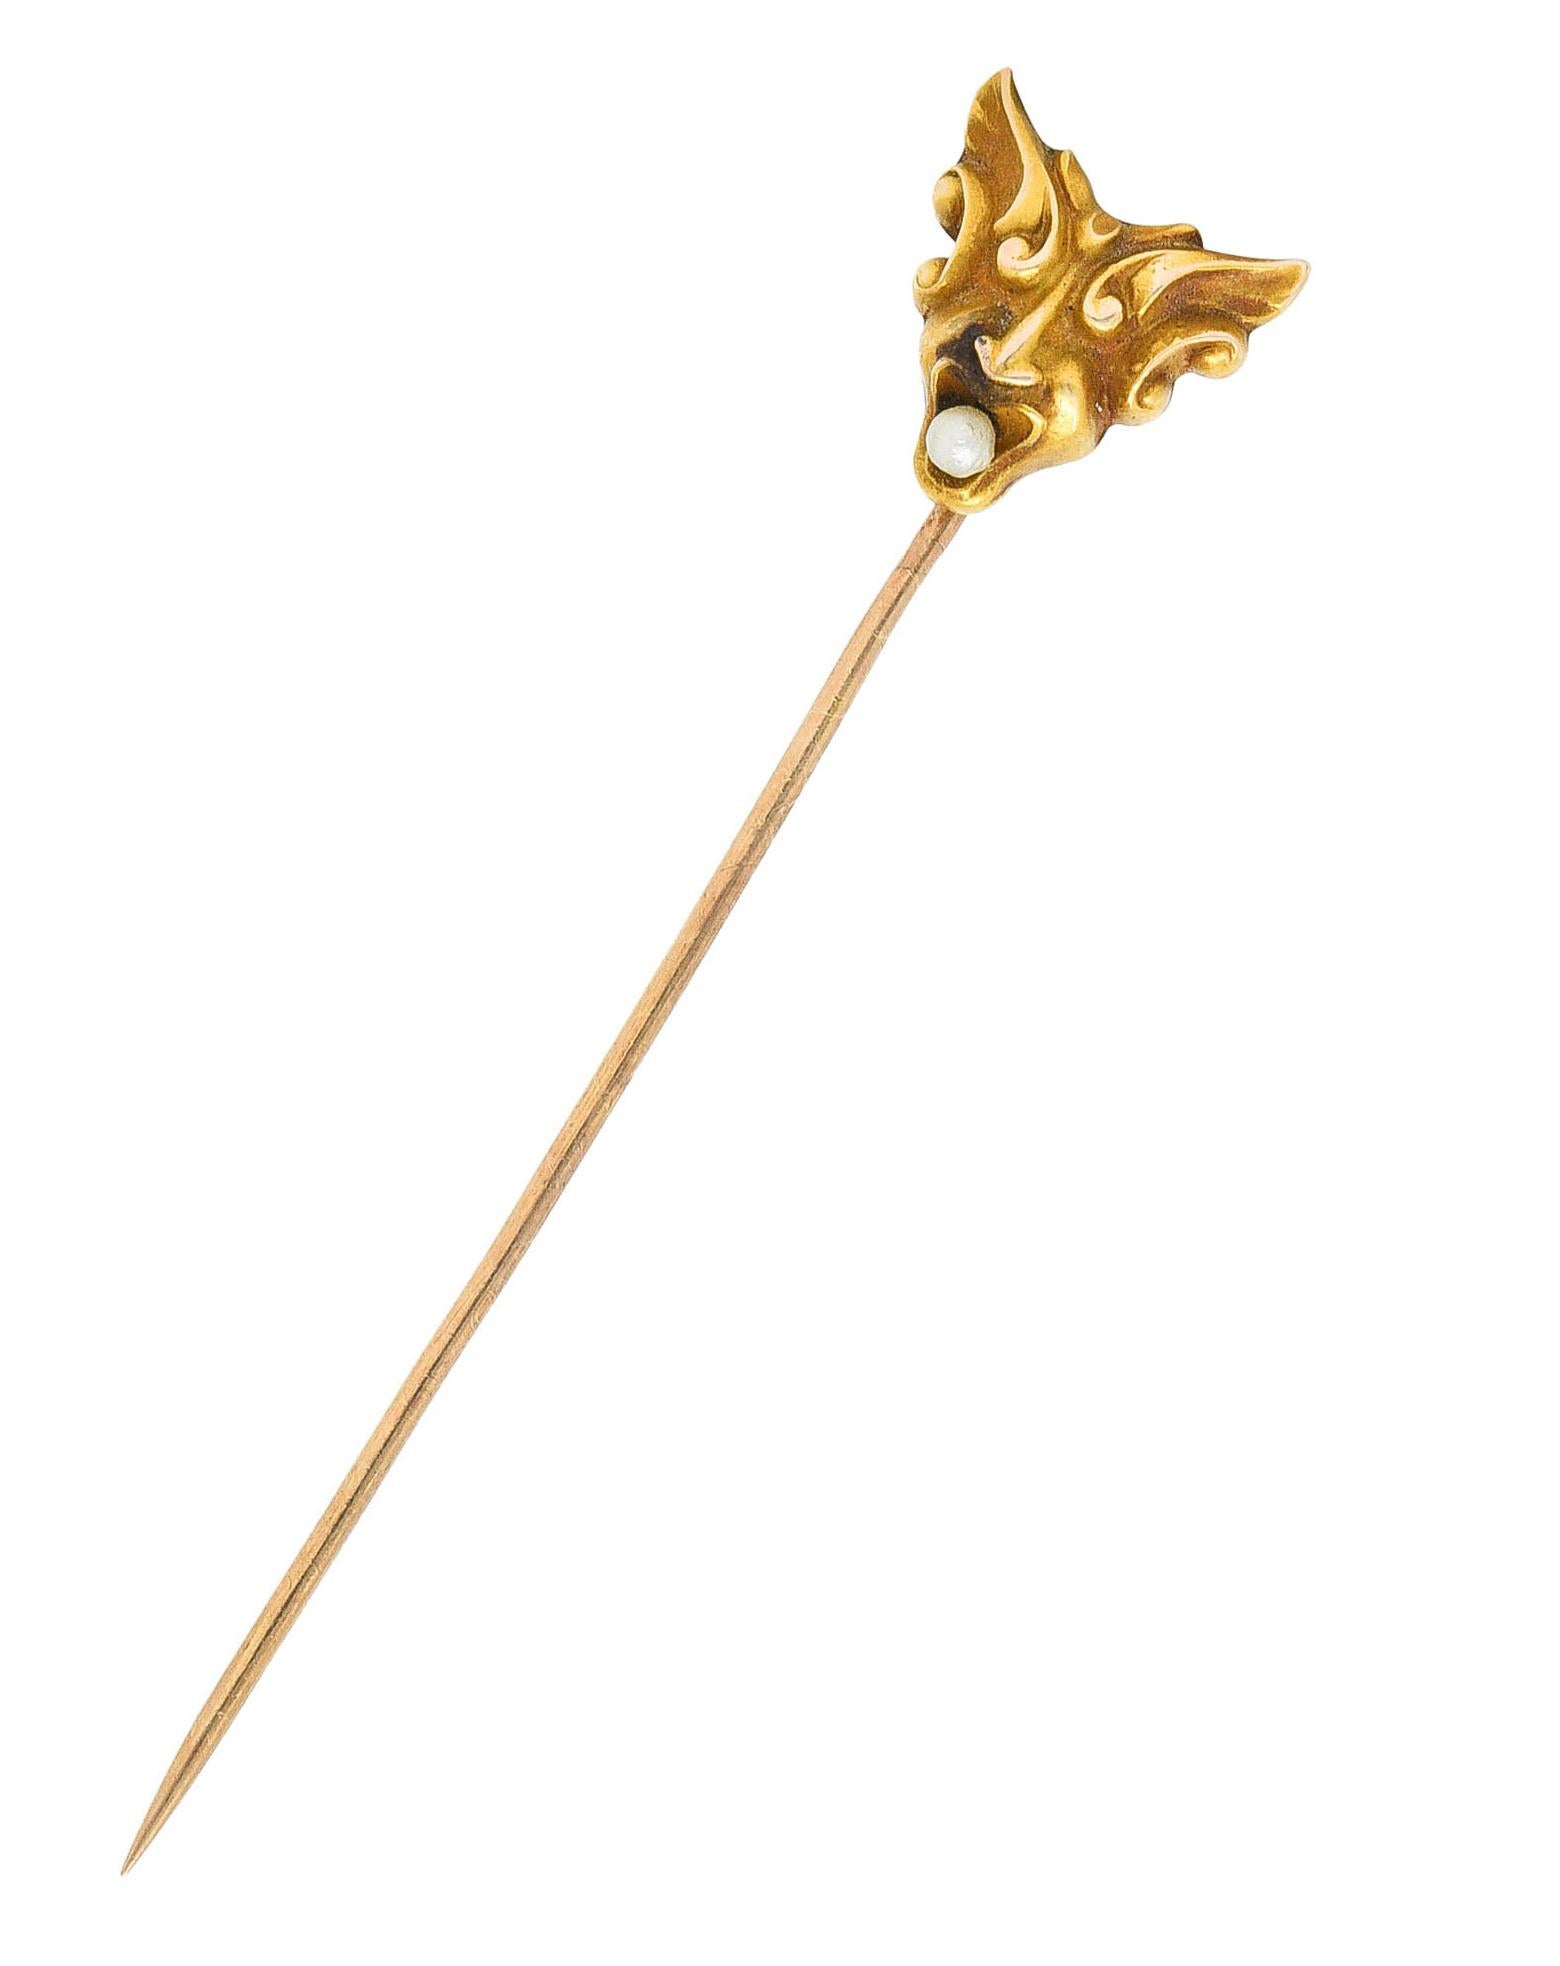 Epingle de Stick conçue comme la tête ailée stylisée d'Hermès - messager des dieux

Avec des ailes en forme de coup de fouet et une perle de 2,0 mm dans la bouche 

La perle est de couleur blanche avec un bon lustre

Tête : 1/2 x 1/2 pouce

Longueur